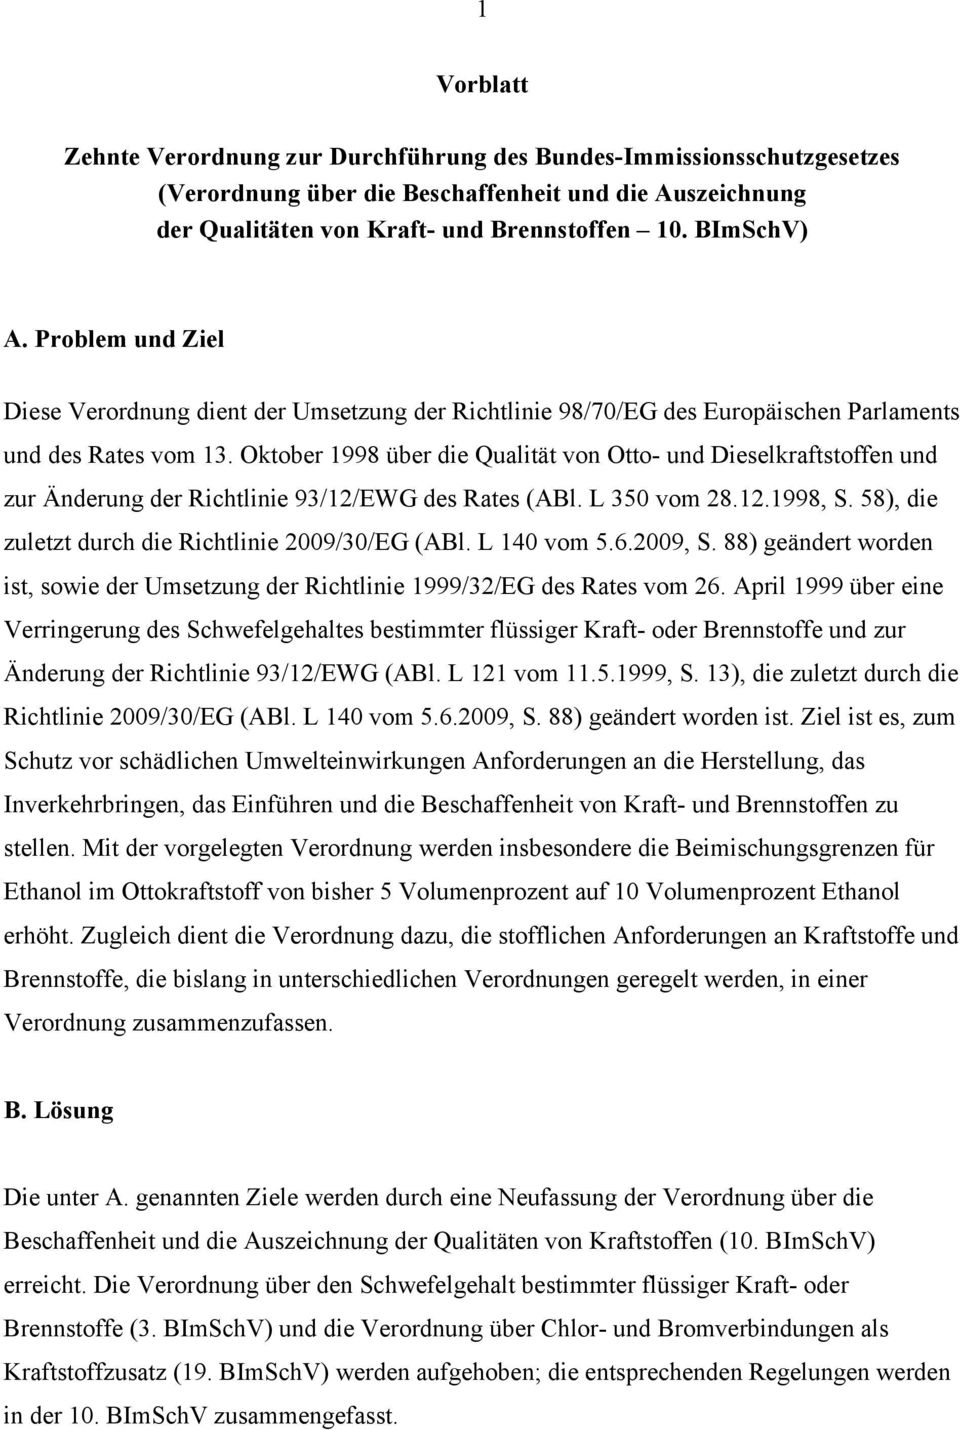 Oktober 1998 über die Qualität von Otto- und Dieselkraftstoffen und zur Änderung der Richtlinie 93/12/EWG des Rates (ABl. L 350 vom 28.12.1998, S.